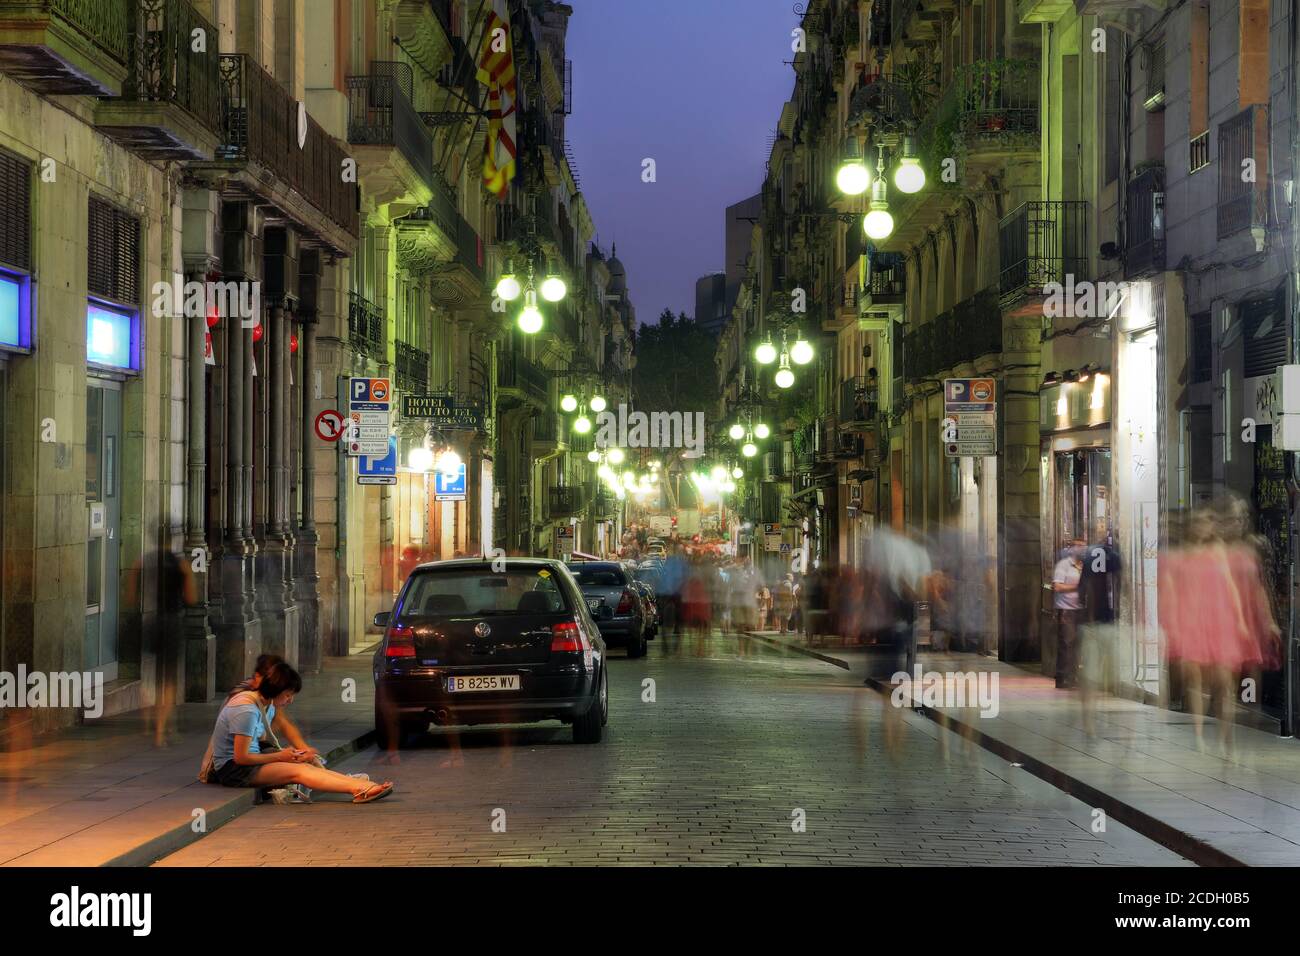 Barcelona, España - 30 de julio de 2012 - escena nocturna a lo largo de la Carrer de Ferran, desde la Plaza de Sant Jaume hacia la Rambla en el Barrio Gótico de Barcelo Foto de stock